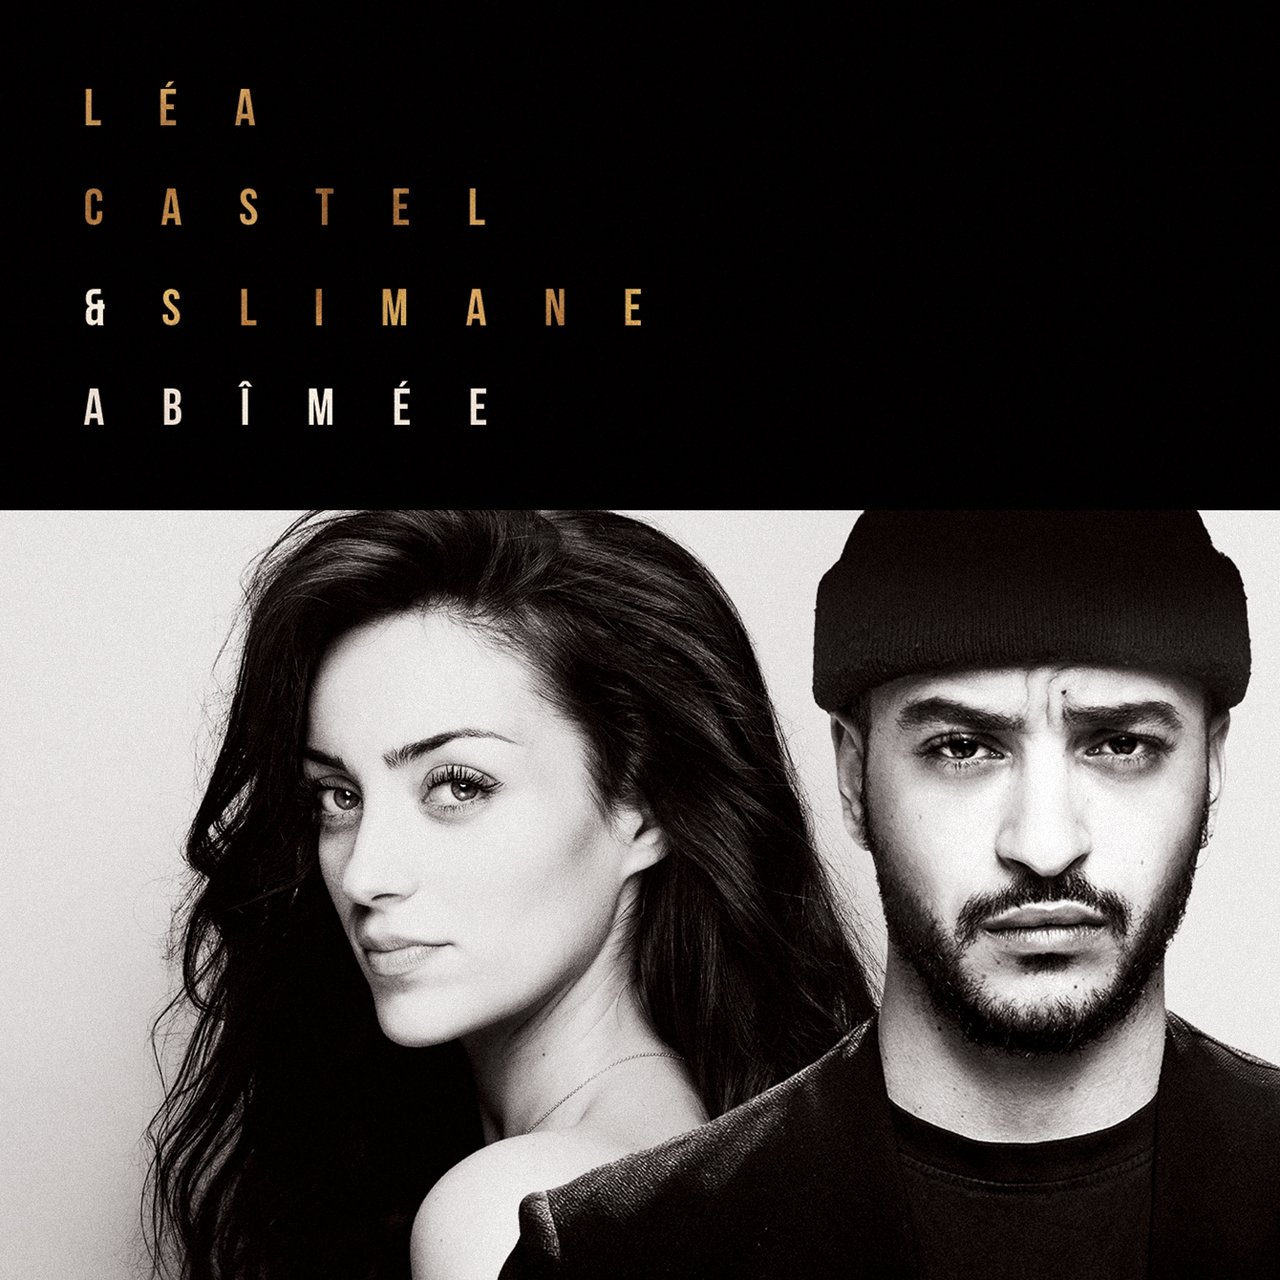 Léa Castel & Slimane — Abîmée cover artwork